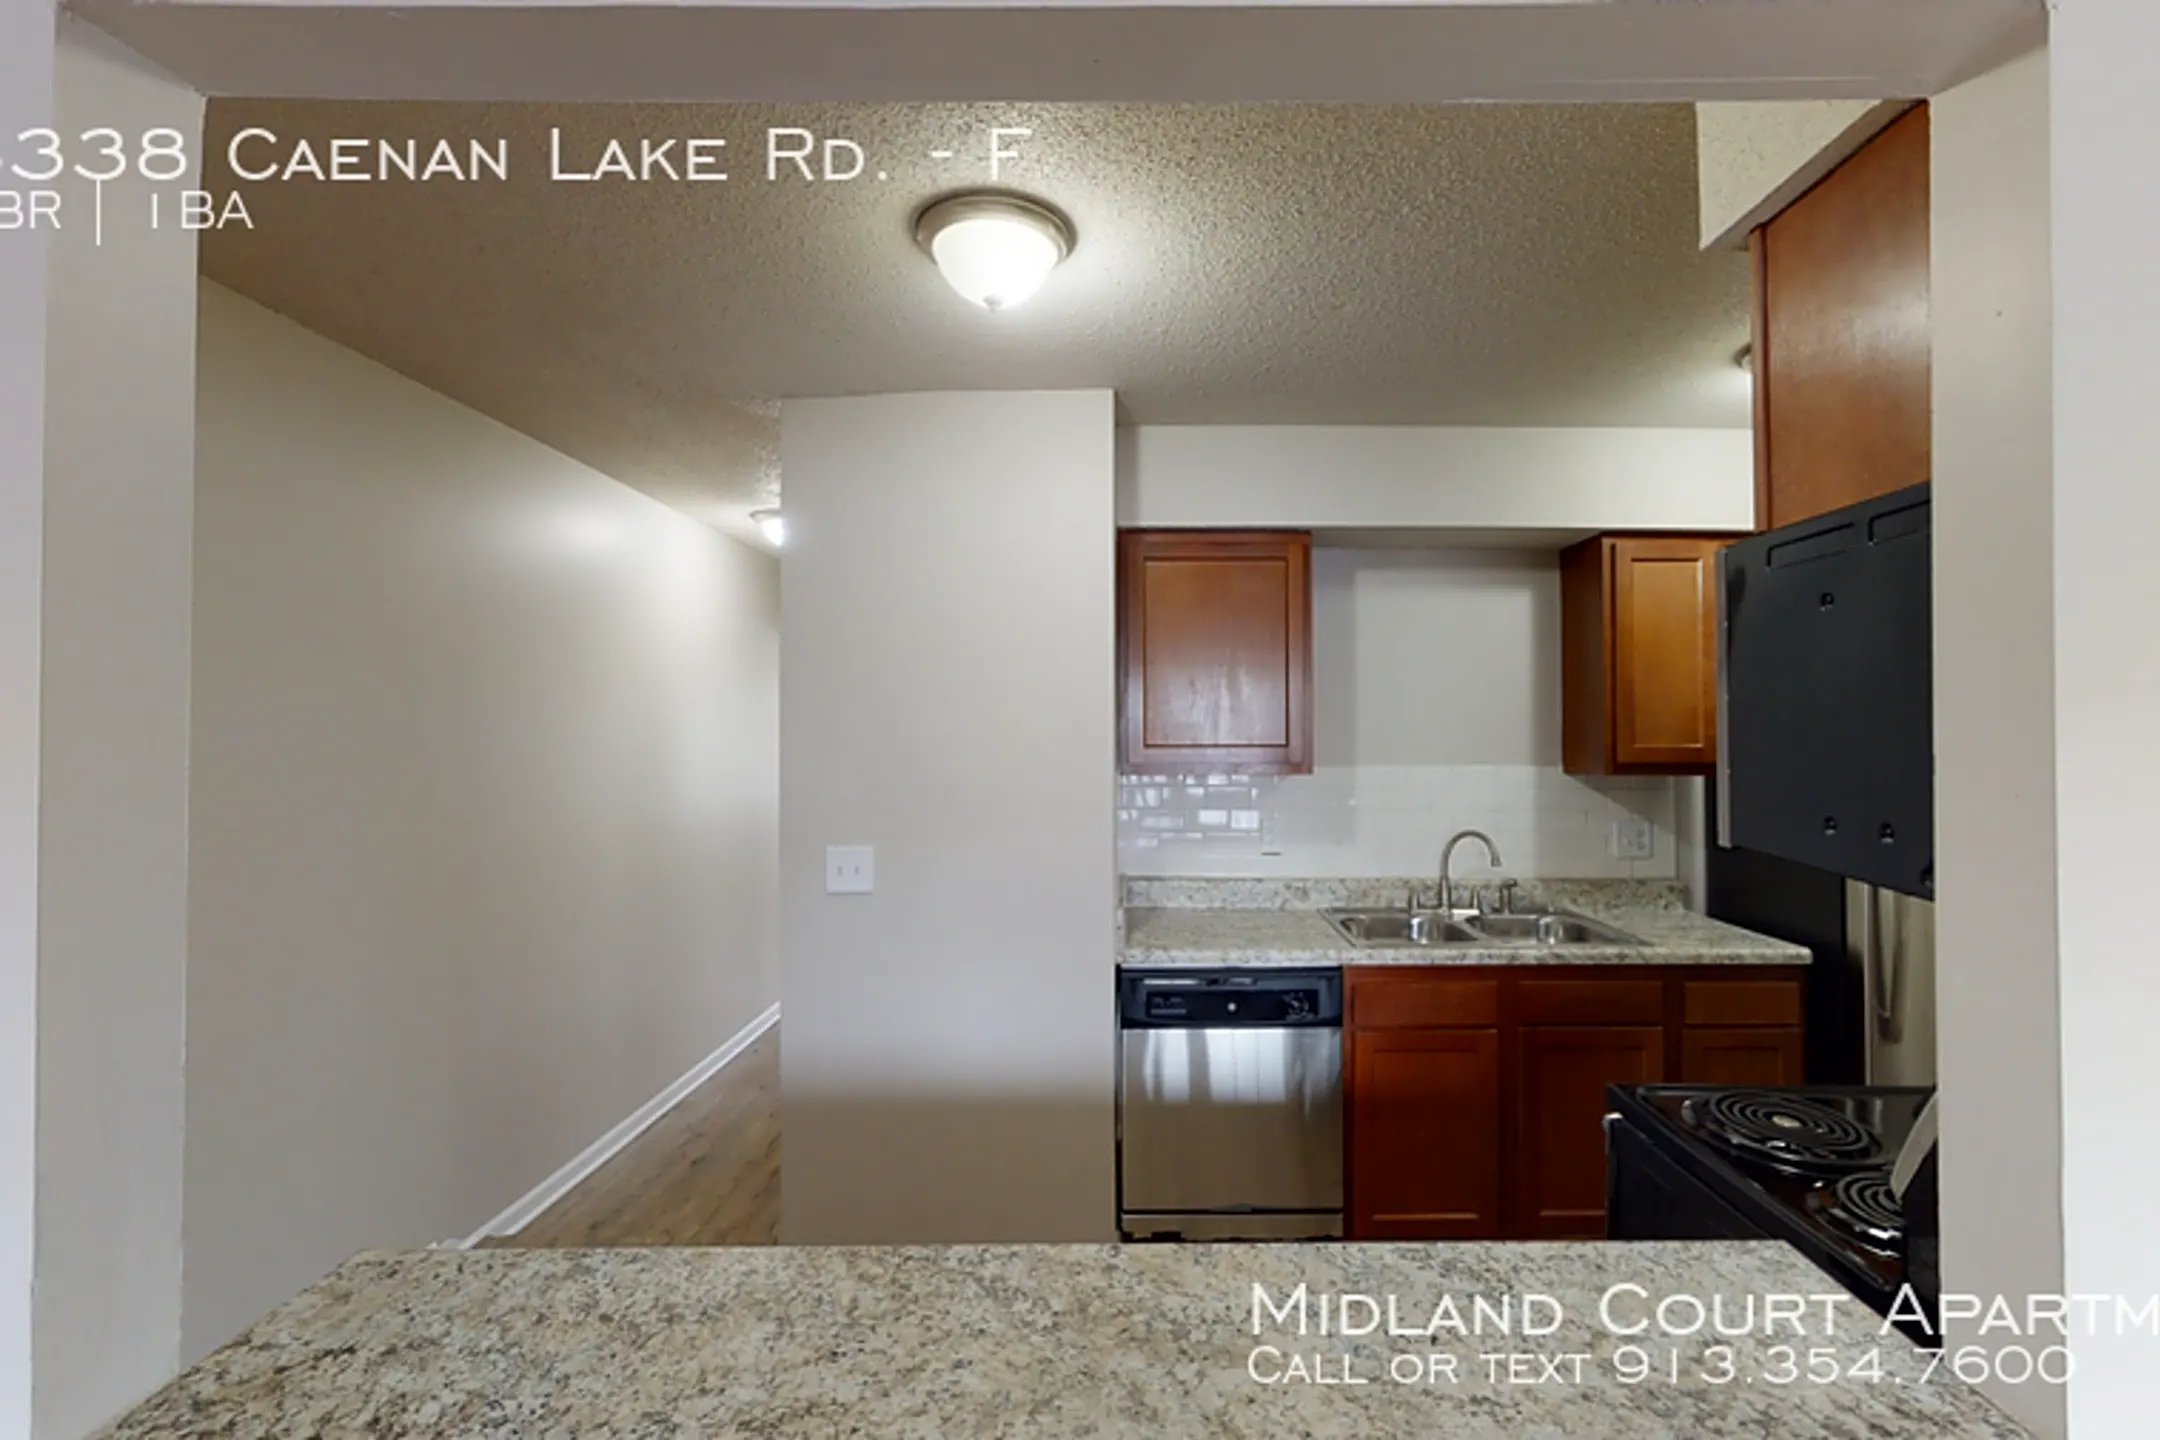 Kitchen - Midland Court - Shawnee, KS